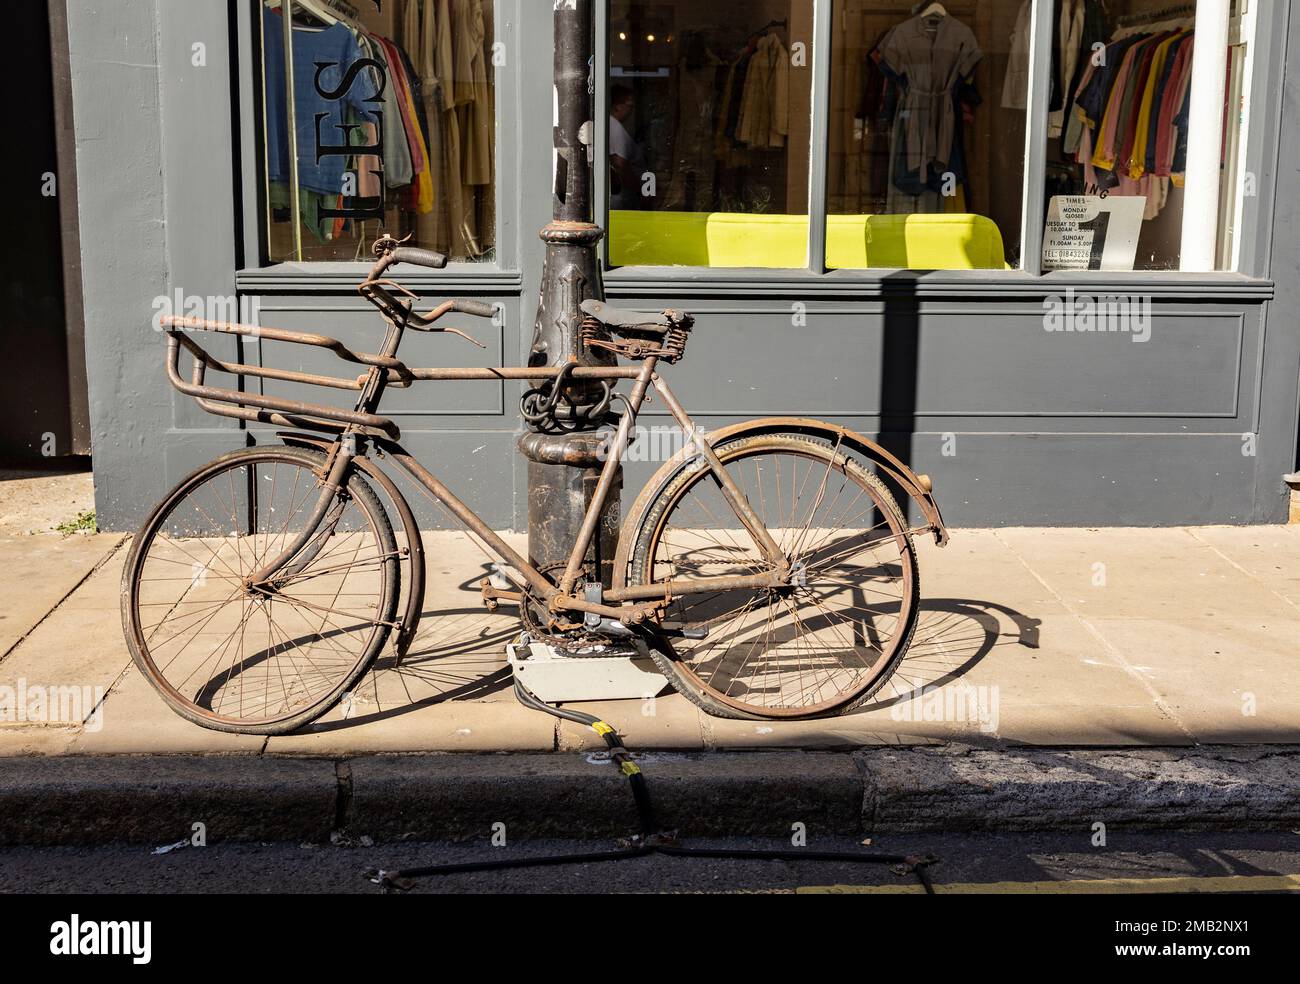 Margate, Kent, vereinigtes Königreich, august 24 2022 Nahaufnahme eines alten rostigen Fahrrads, dessen Rahmen komplett mit Rost bedeckt ist, an einen Lammmast gekettet, der entsorgt wurde Stockfoto